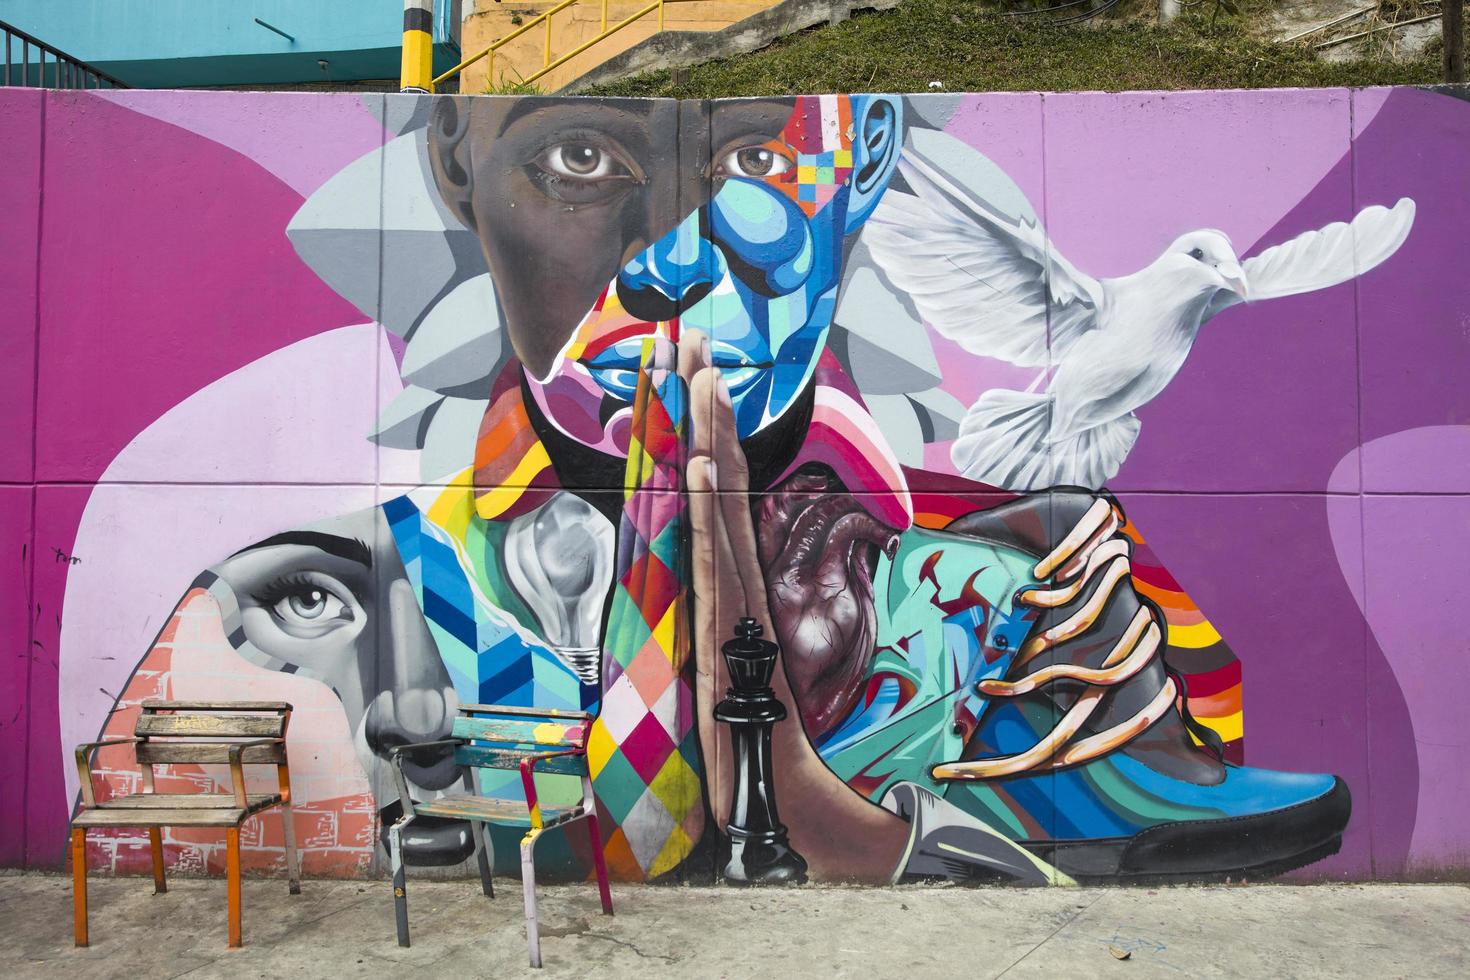 medellin, kolumbien, 2019 - straßenkunst der comuna 13 in medellin, kolumbien. einst als kolumbiens gefährlichstes barrio bekannt, ist heute die Graffiti-Tour eine der beliebtesten Touristenattraktionen in Medellin. foto